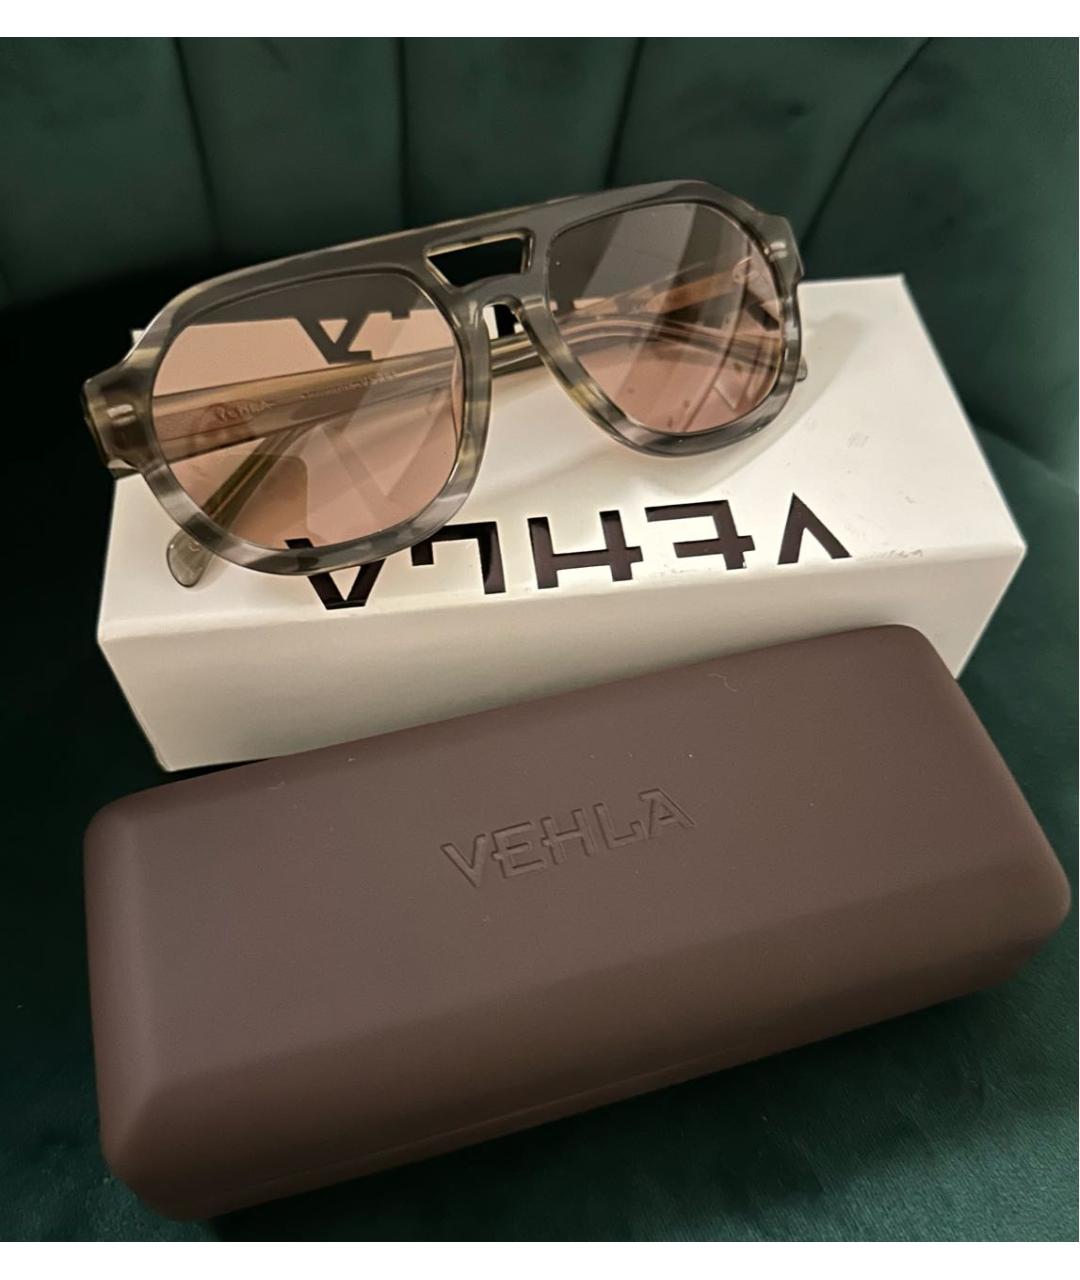 Vehla Коричневые пластиковые солнцезащитные очки, фото 4